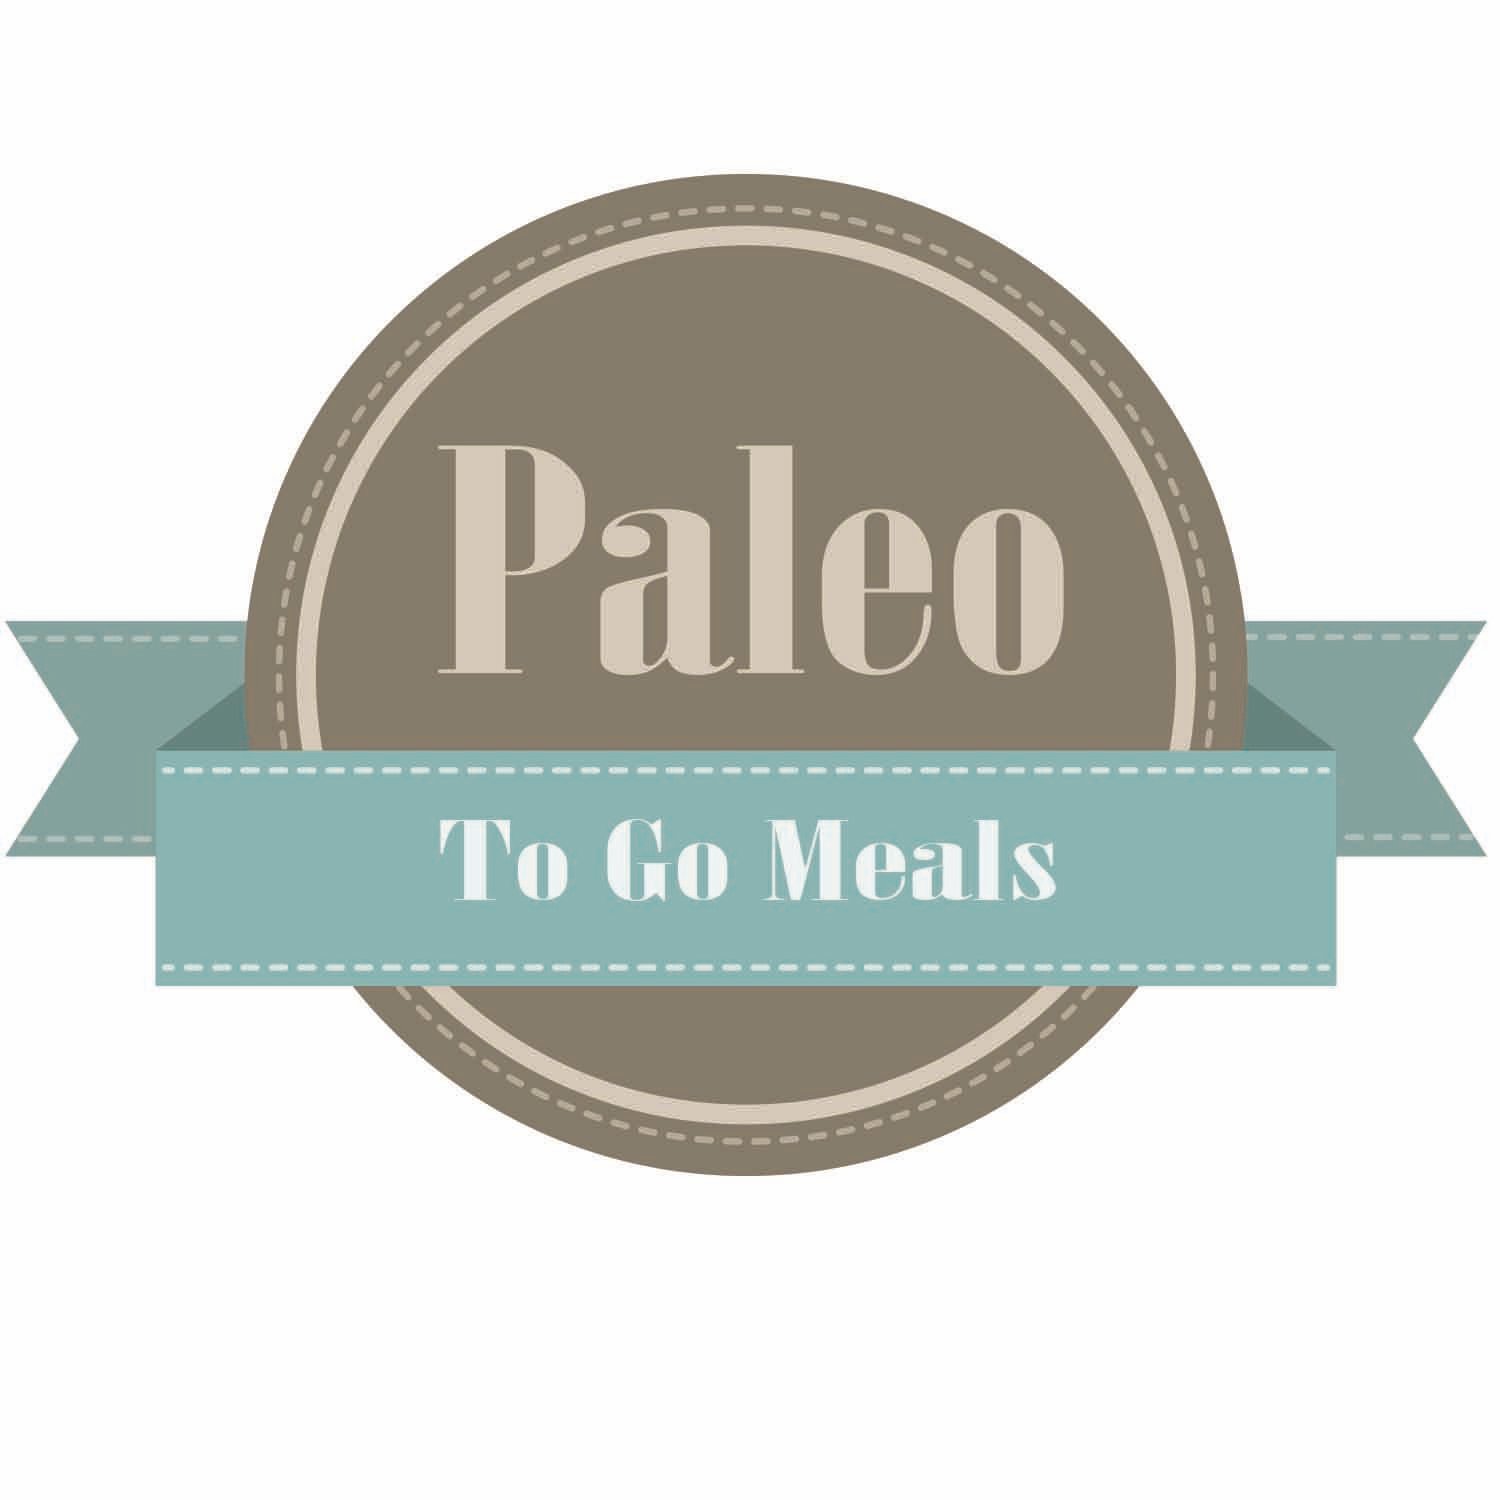 R and S Restaurant Logo - Bold, Serious, Restaurant Logo Design for Paleo To Go Meals